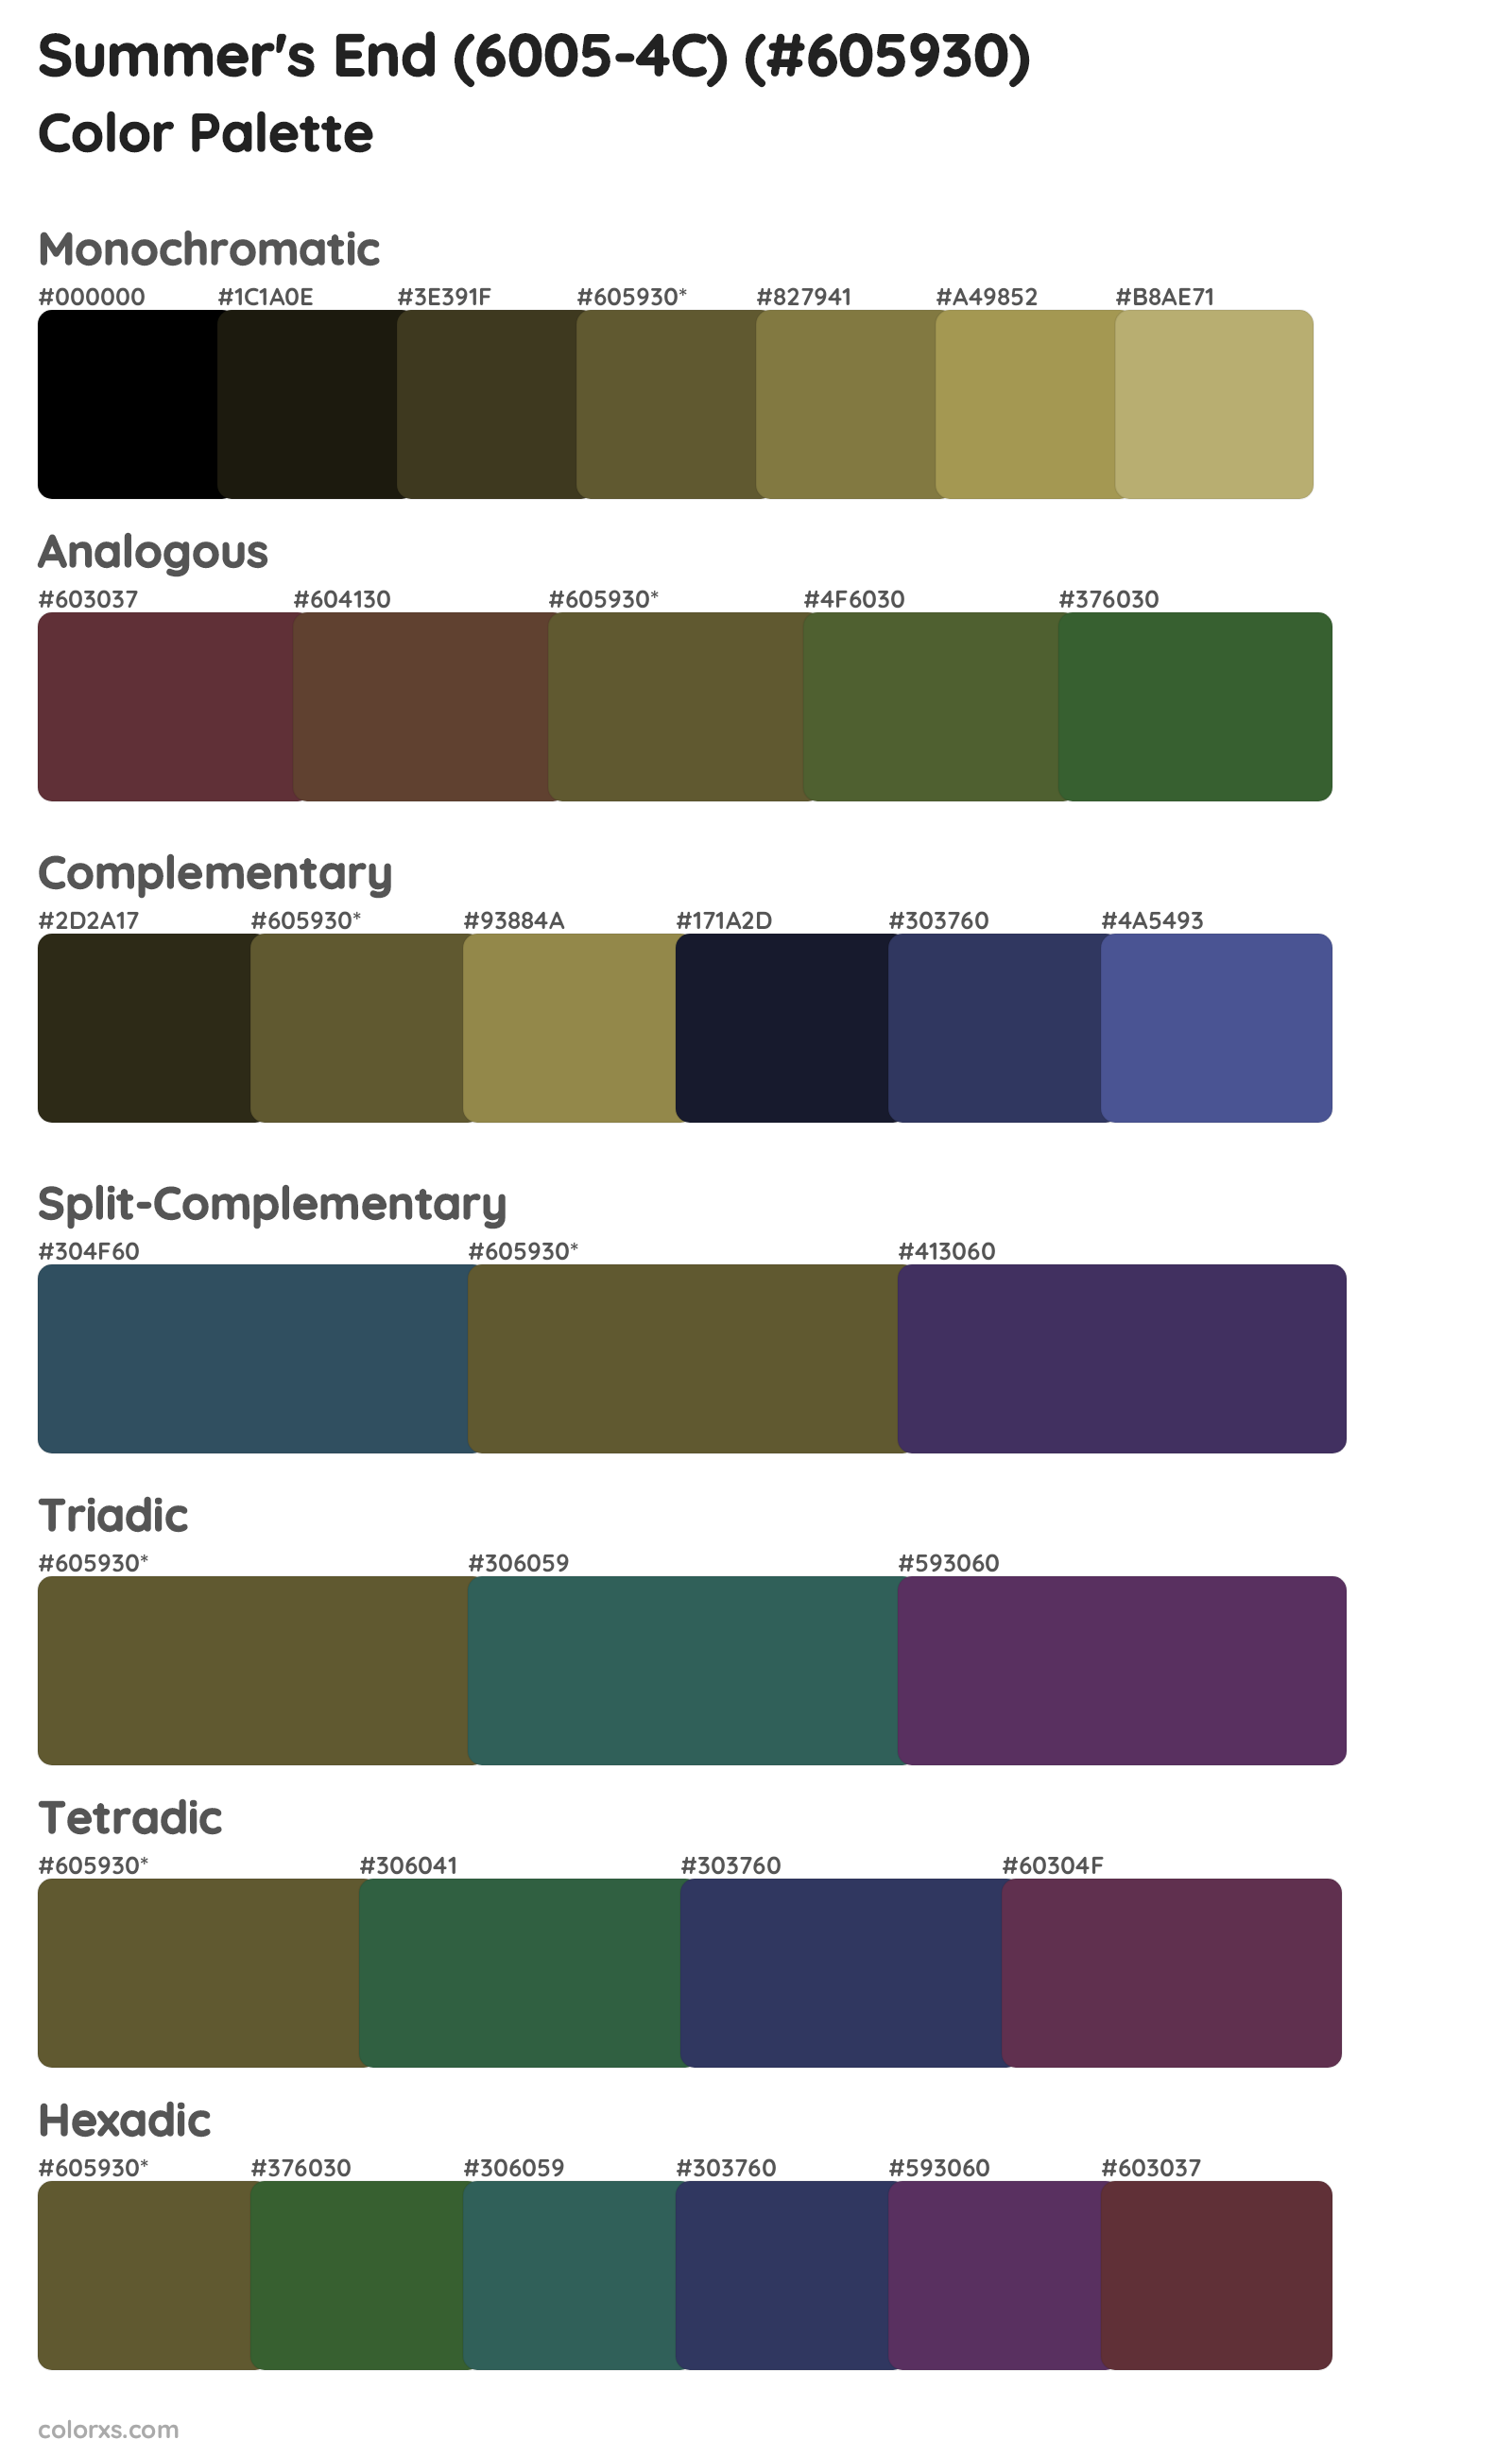 Summer's End (6005-4C) Color Scheme Palettes